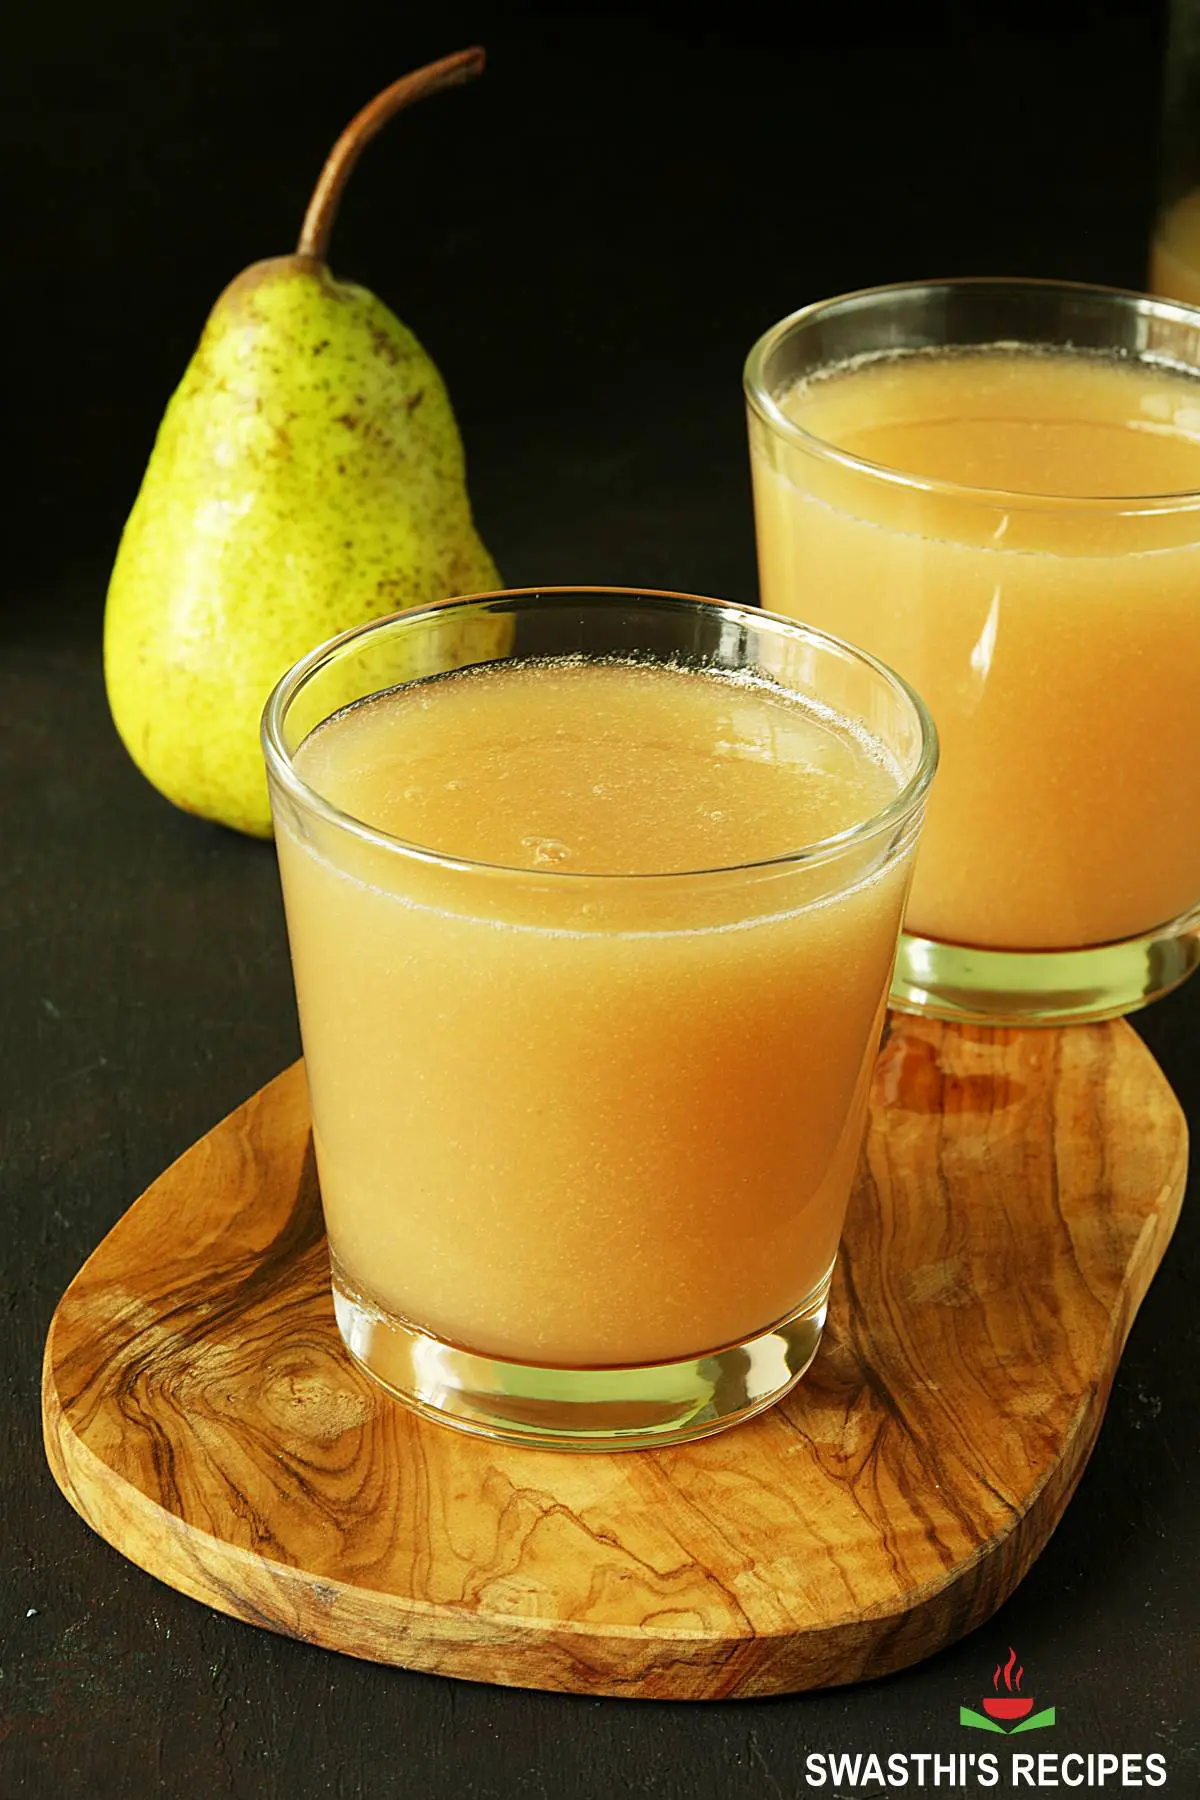 https://www.indianhealthyrecipes.com/wp-content/uploads/2021/05/pear-juice.jpg.webp